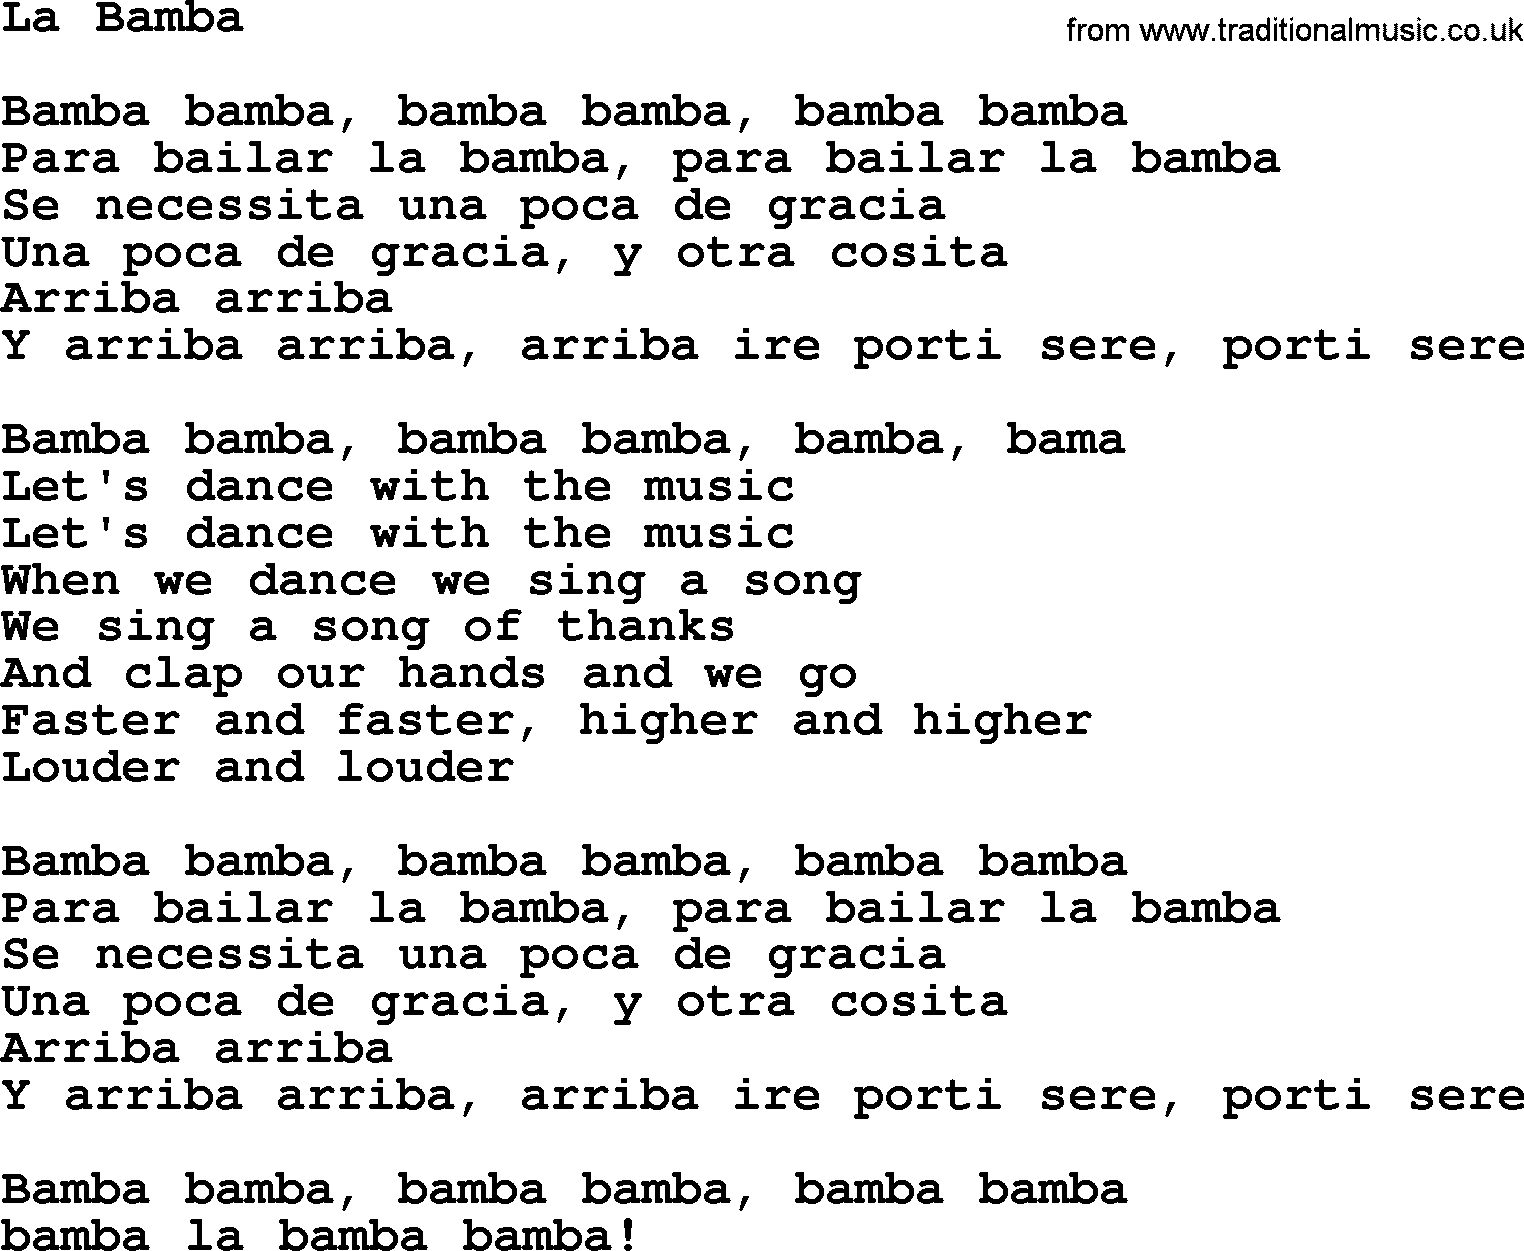 Bruce Springsteen song: La Bamba lyrics